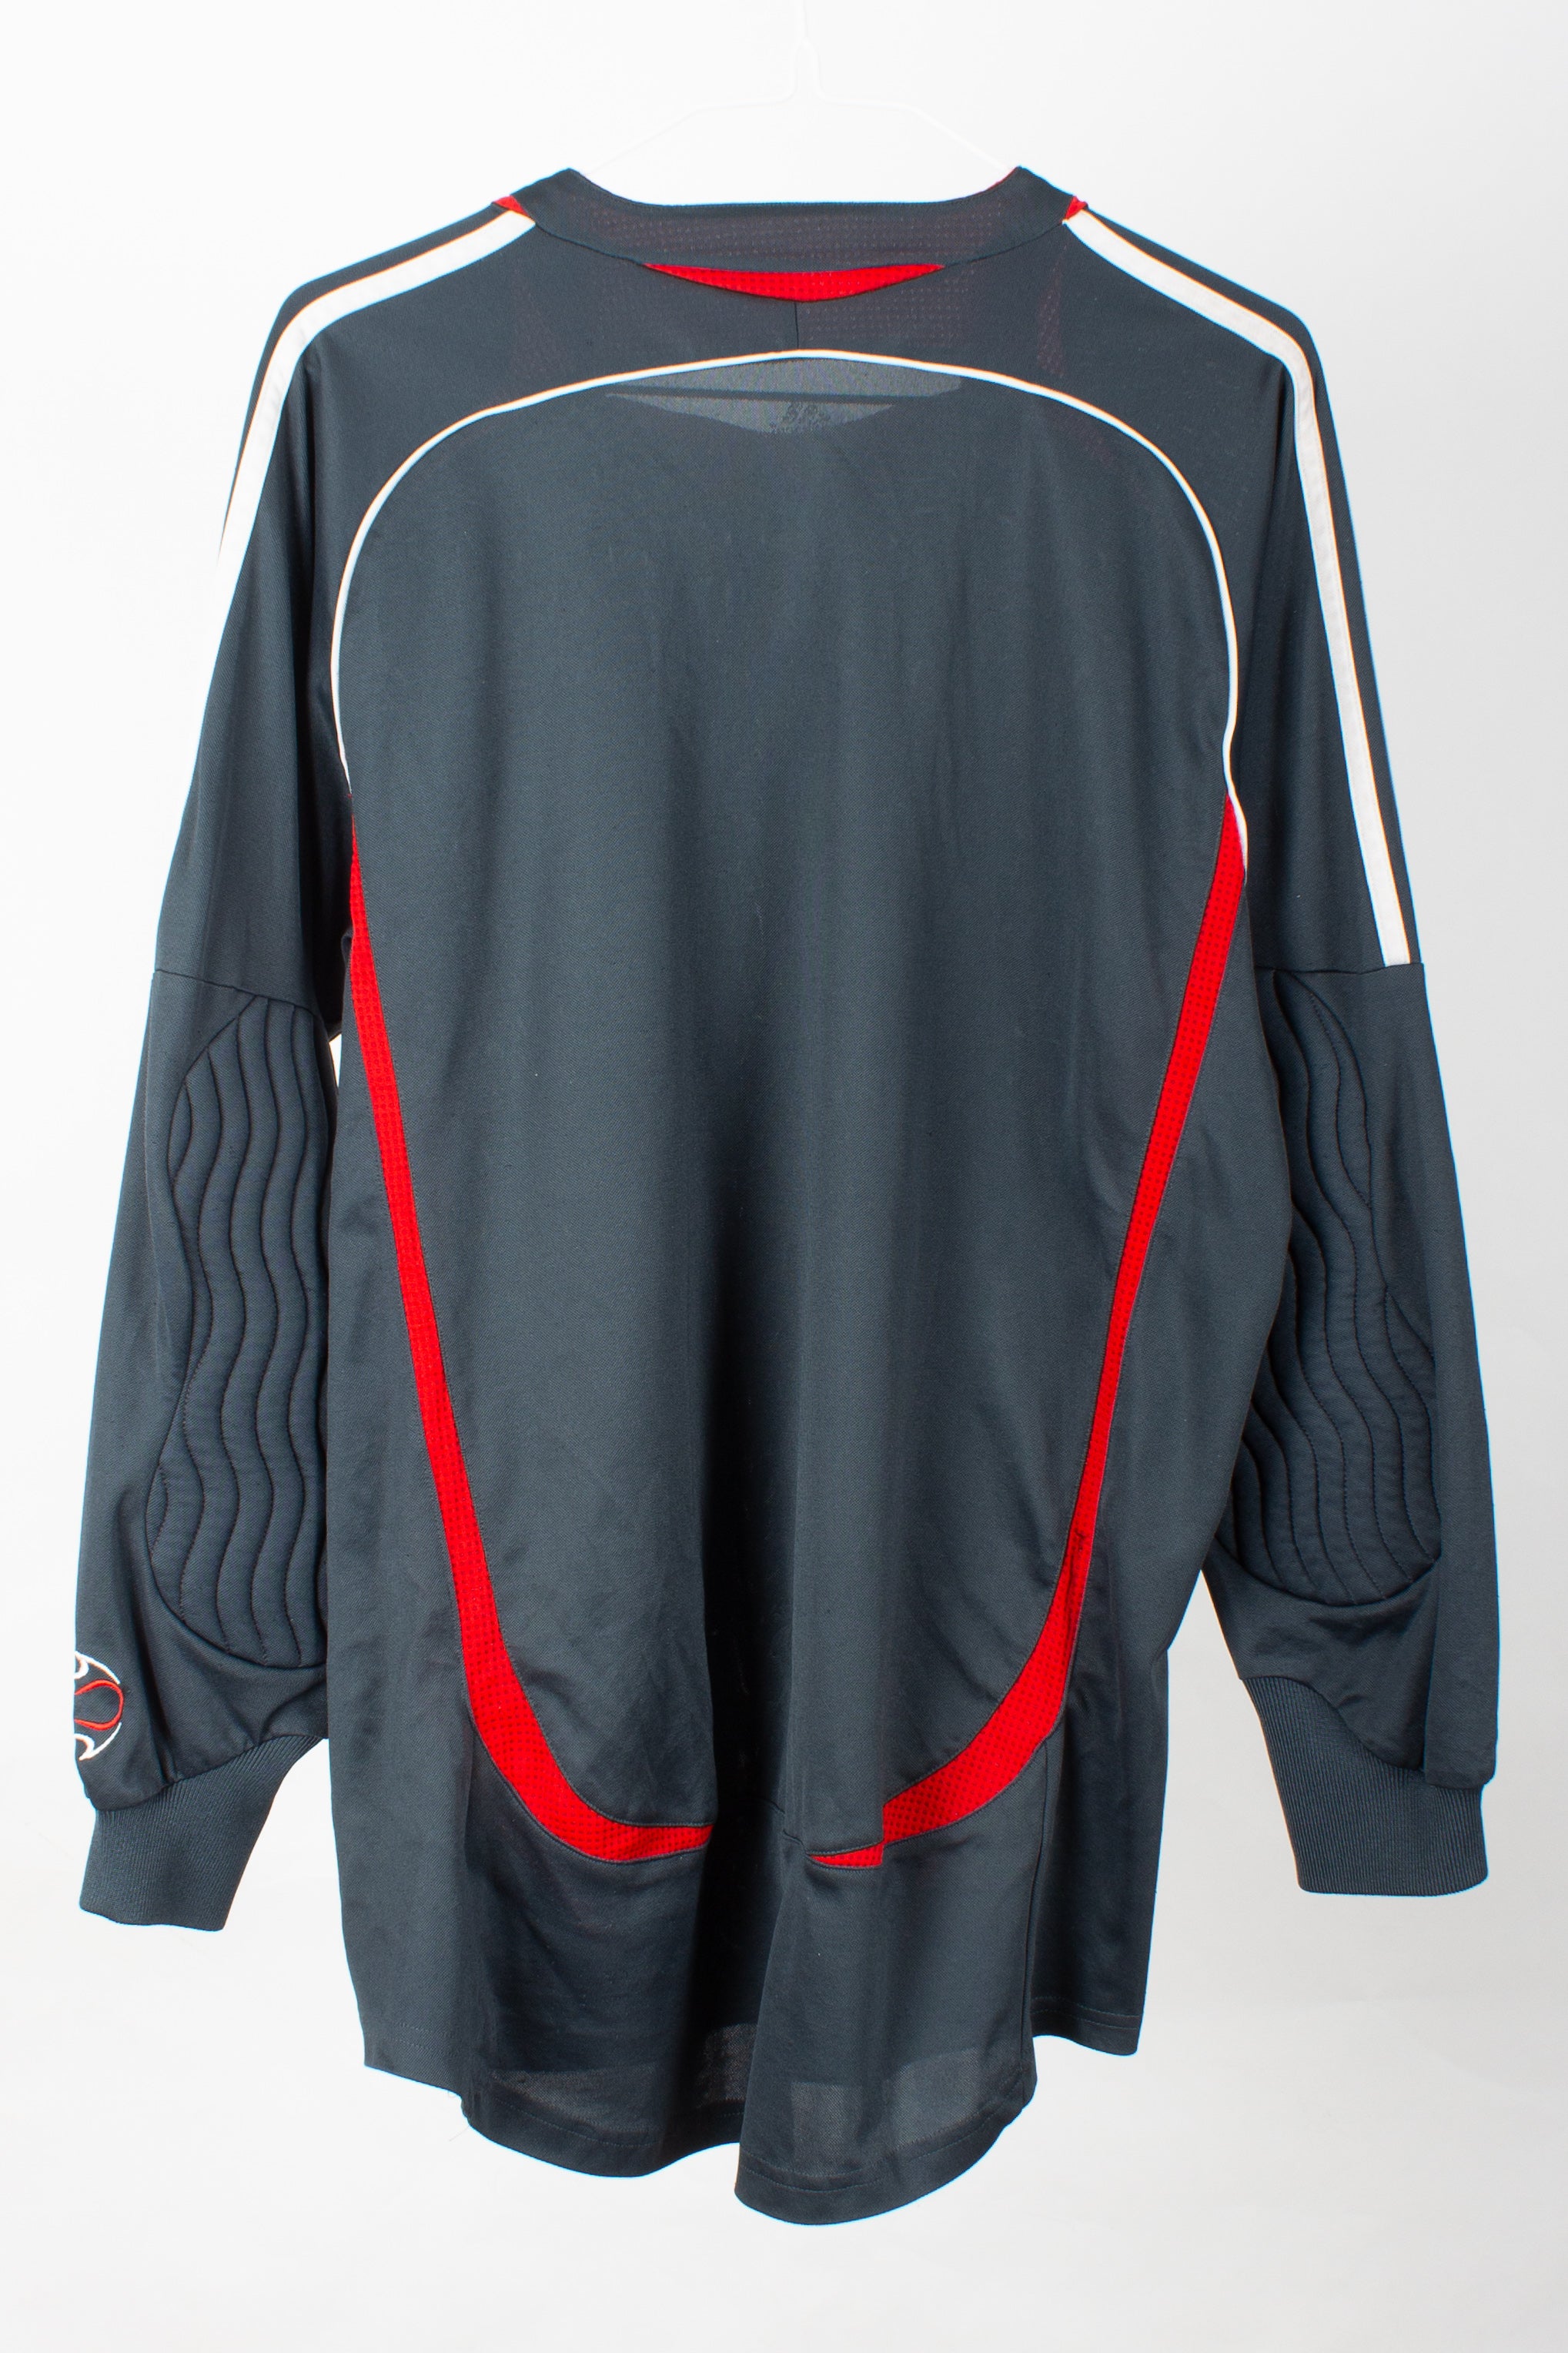 Liverpool 2006/07 Goalkeeper Shirt (S)